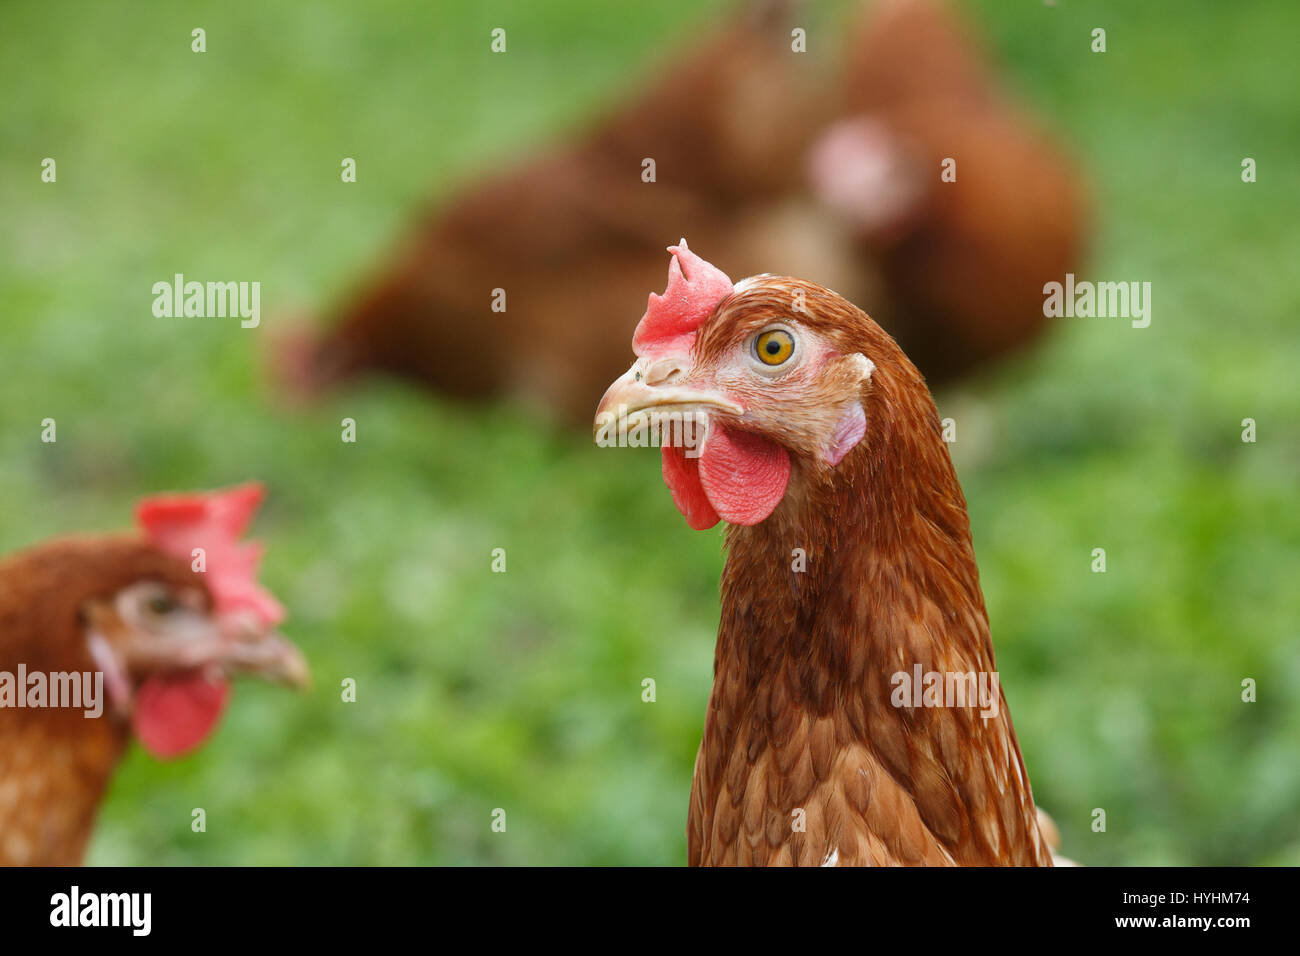 Las gallinas camperas (pollo) en una granja orgánica, pastando libremente en una pradera. La agricultura orgánica, los derechos de los animales, volver al concepto de naturaleza. Foto de stock